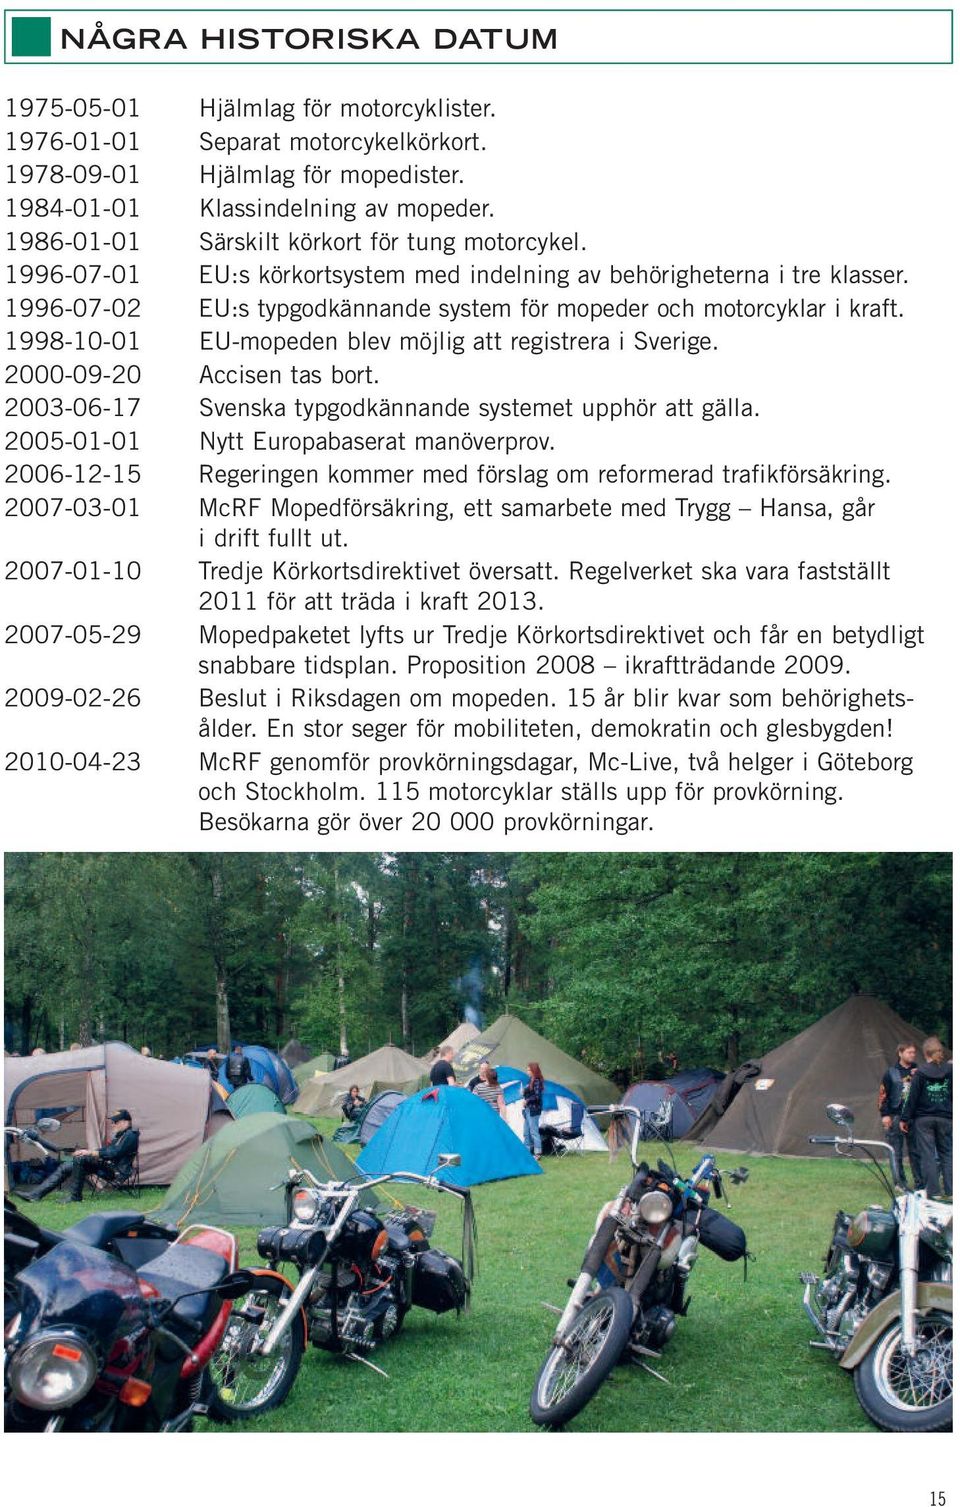 1996-07-02 EU:s typgodkännande system för mopeder och motor cyklar i kraft. 1998-10-01 EU-mopeden blev möjlig att registrera i Sverige. 2000-09-20 Accisen tas bort.